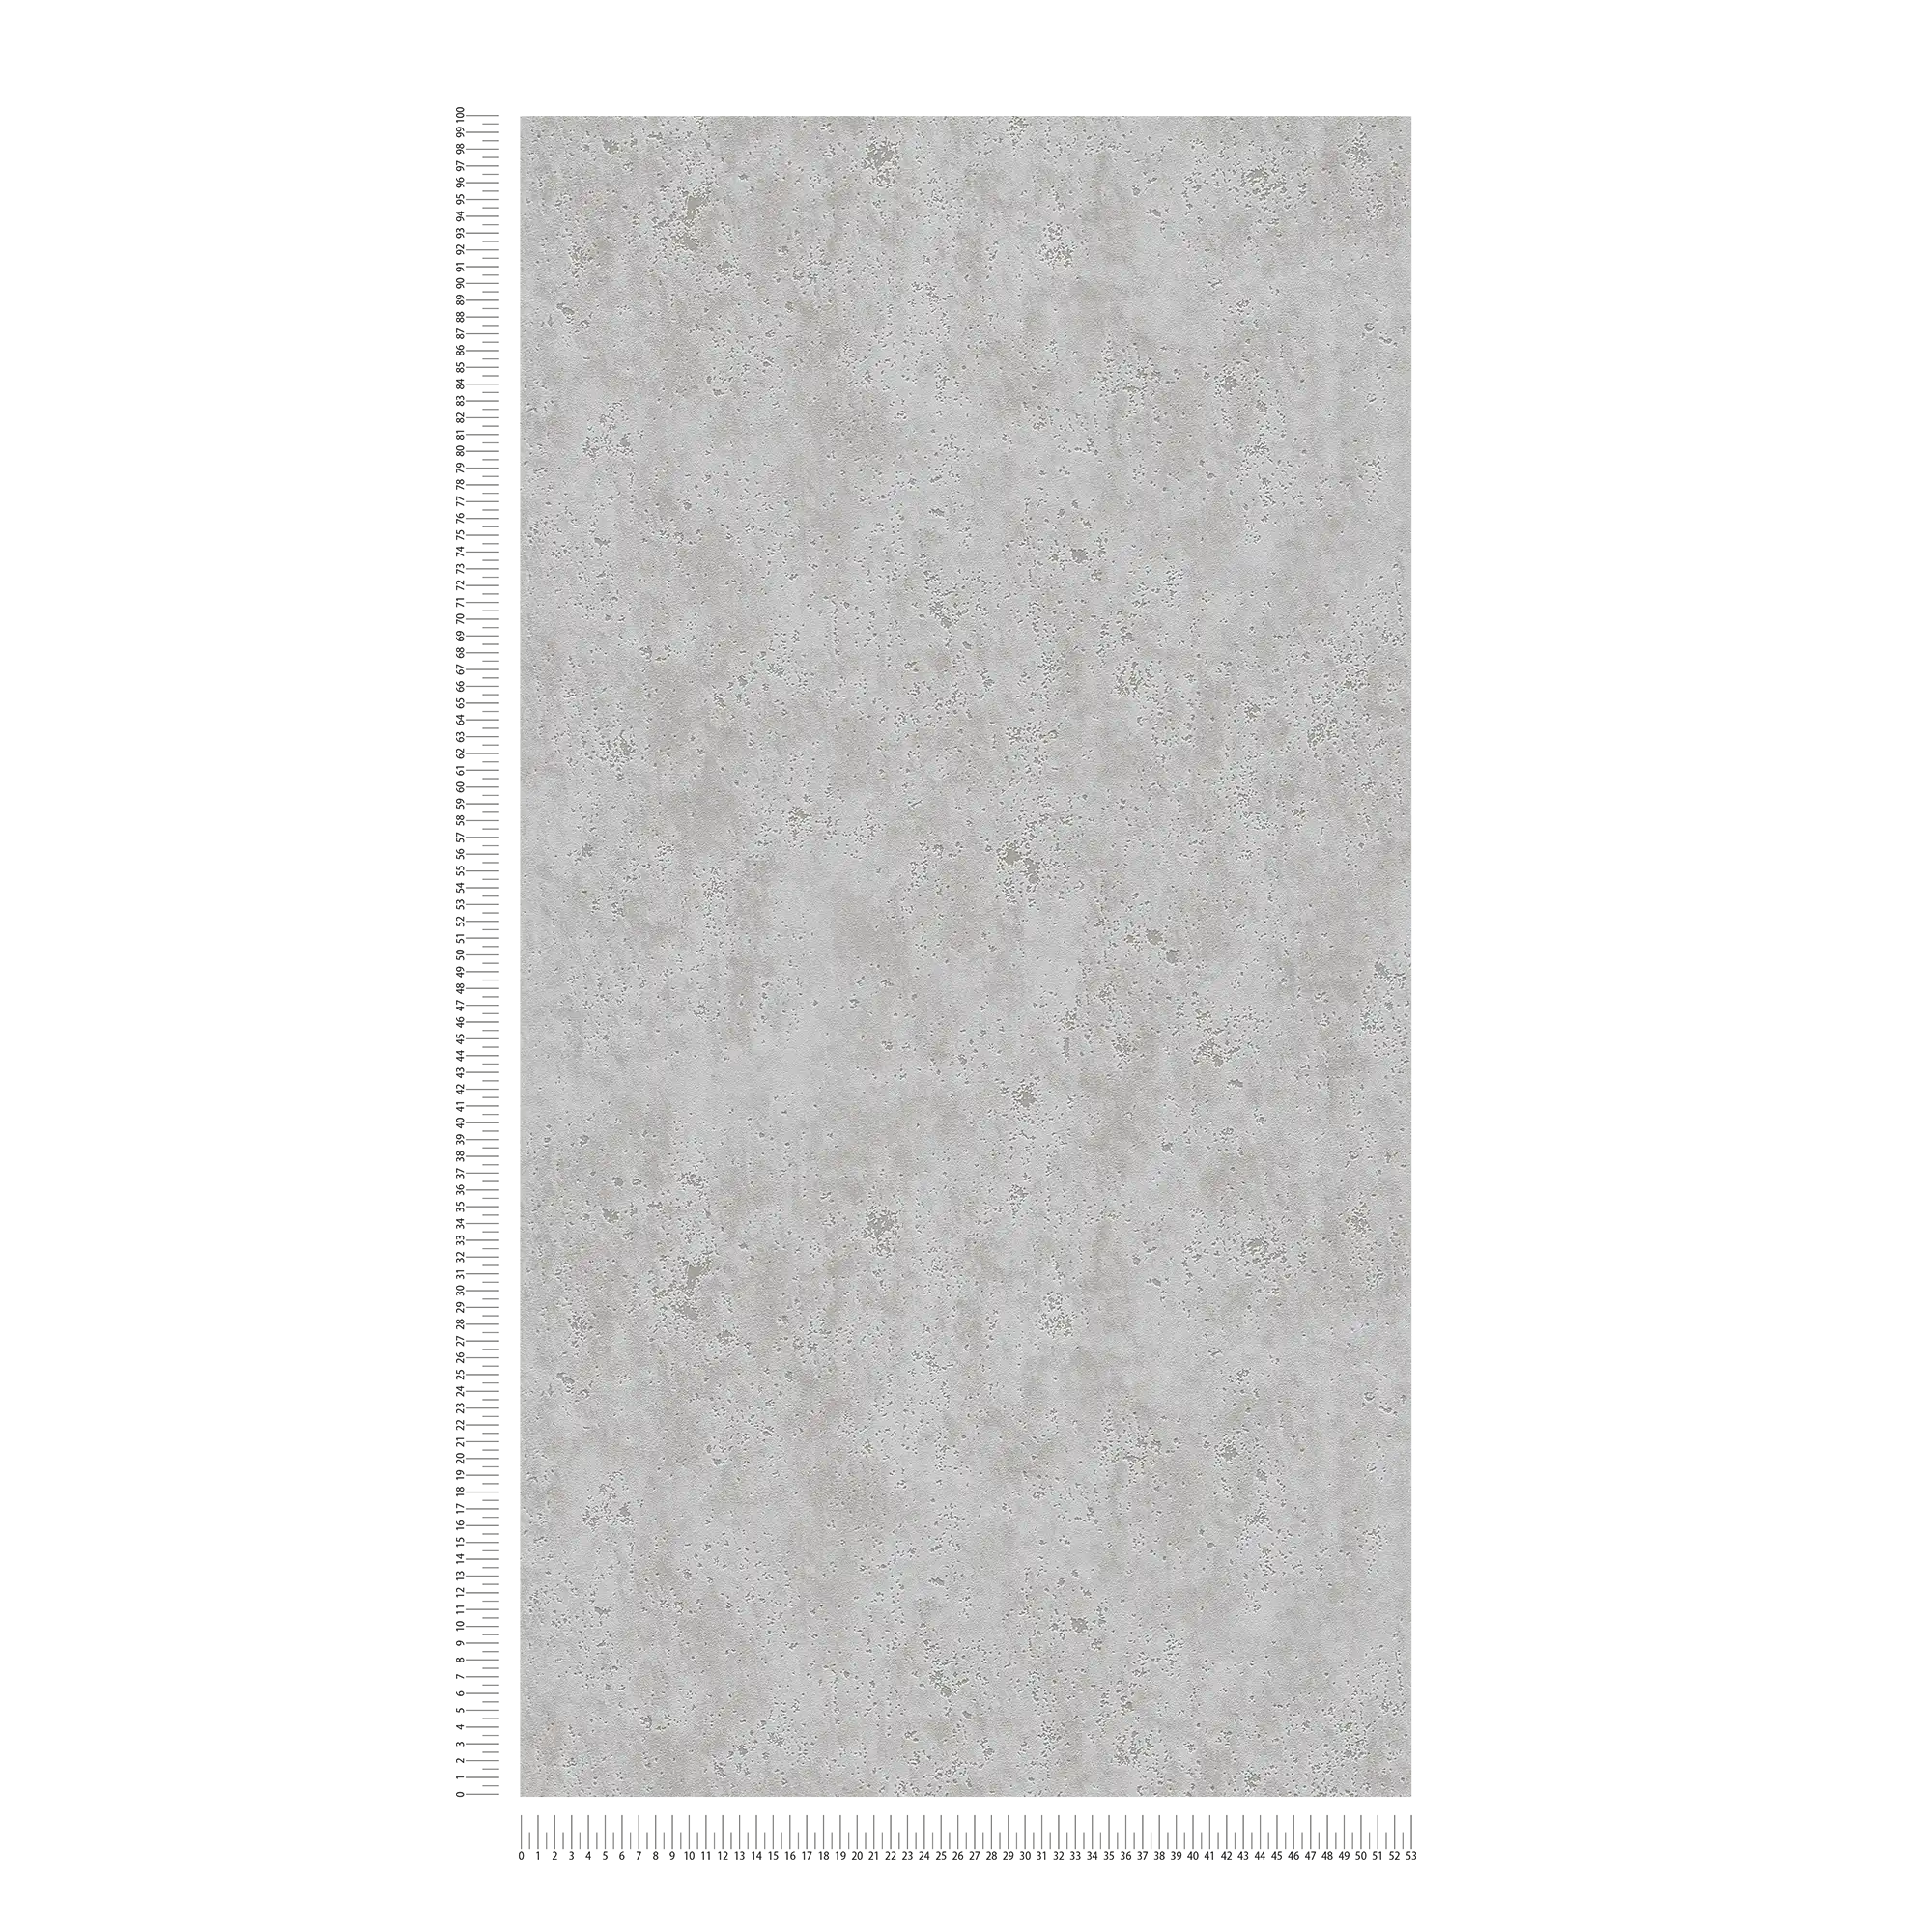             Carta da parati effetto intonaco con texture superficiale ruvida - grigio
        